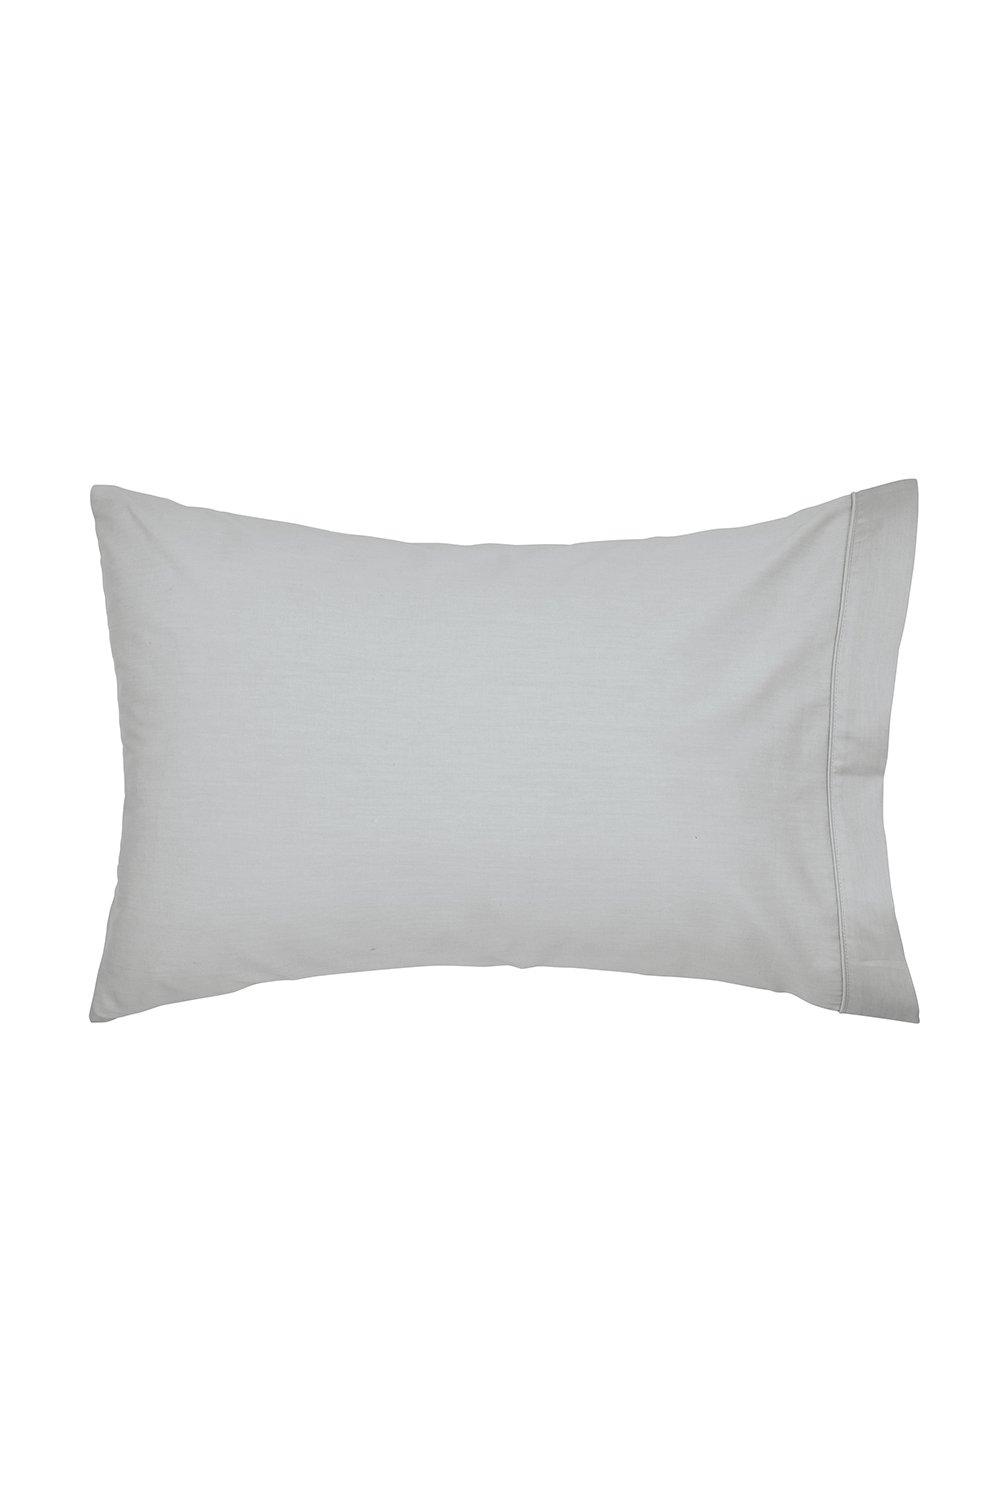 'Taisho' Egyptian Cotton Standard Pillowcase